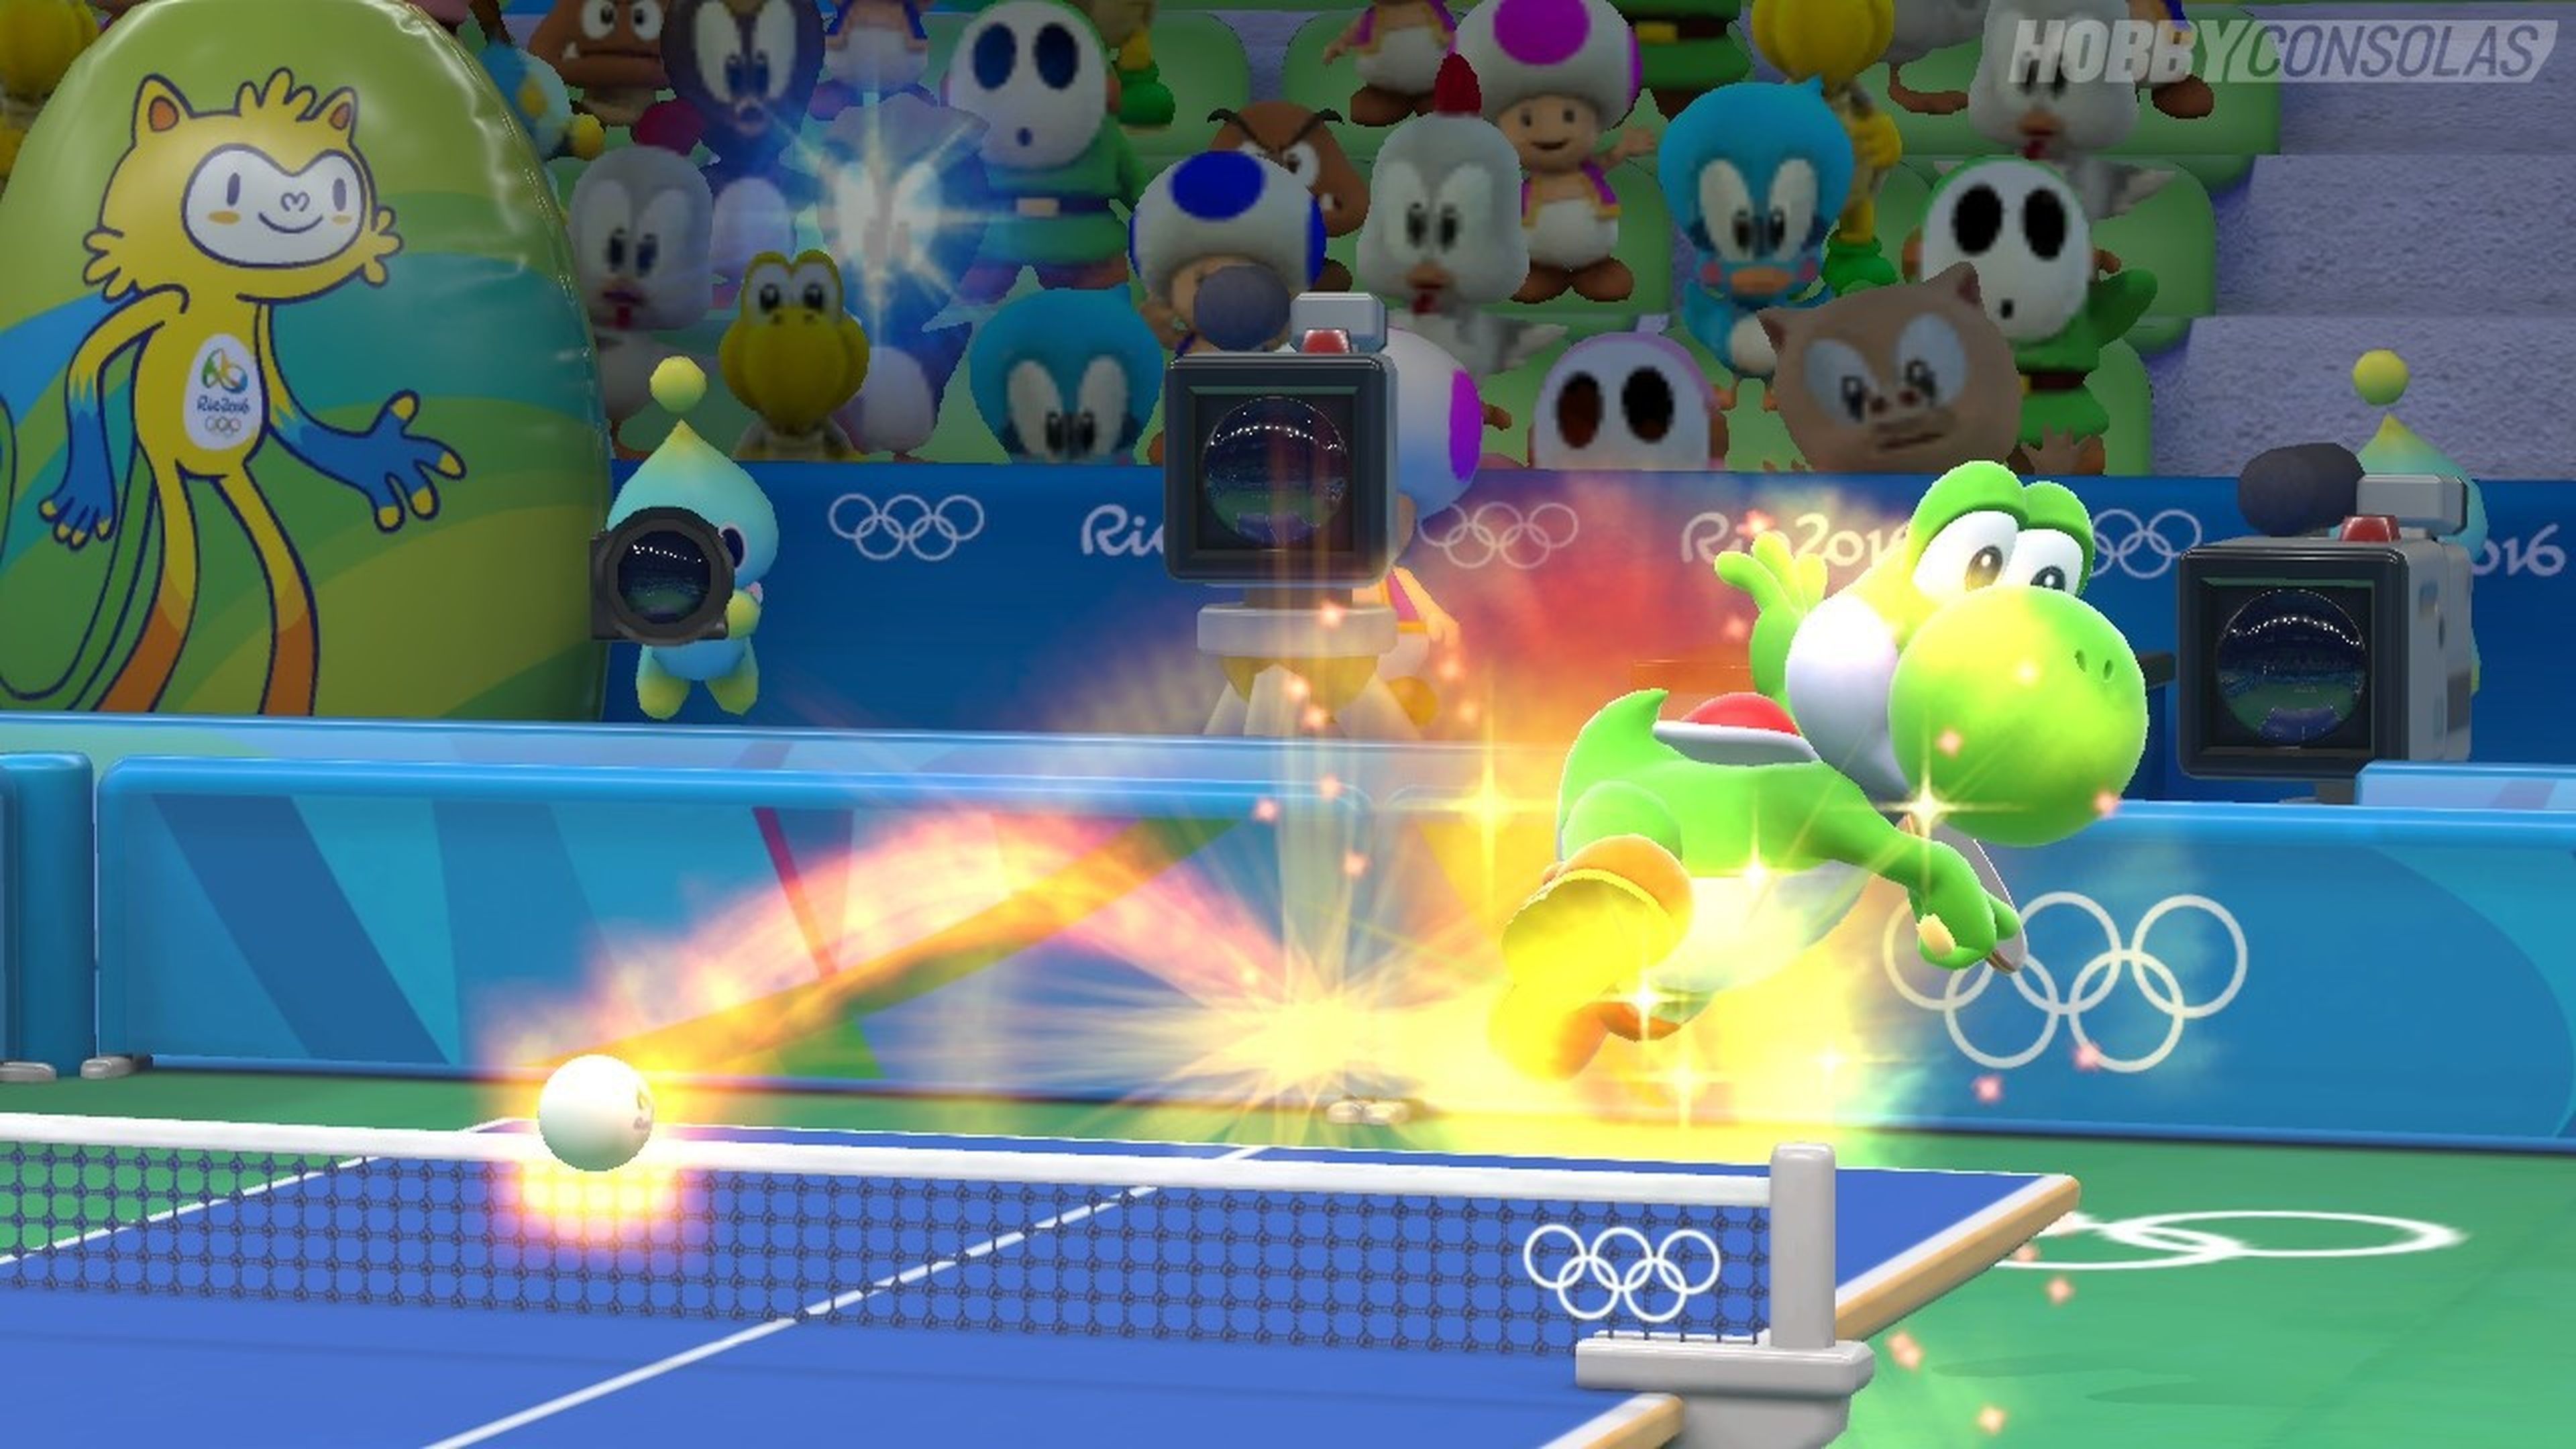 Mario & Sonic en los Juegos Olímpicos Río 2016 - Avance para Wii U